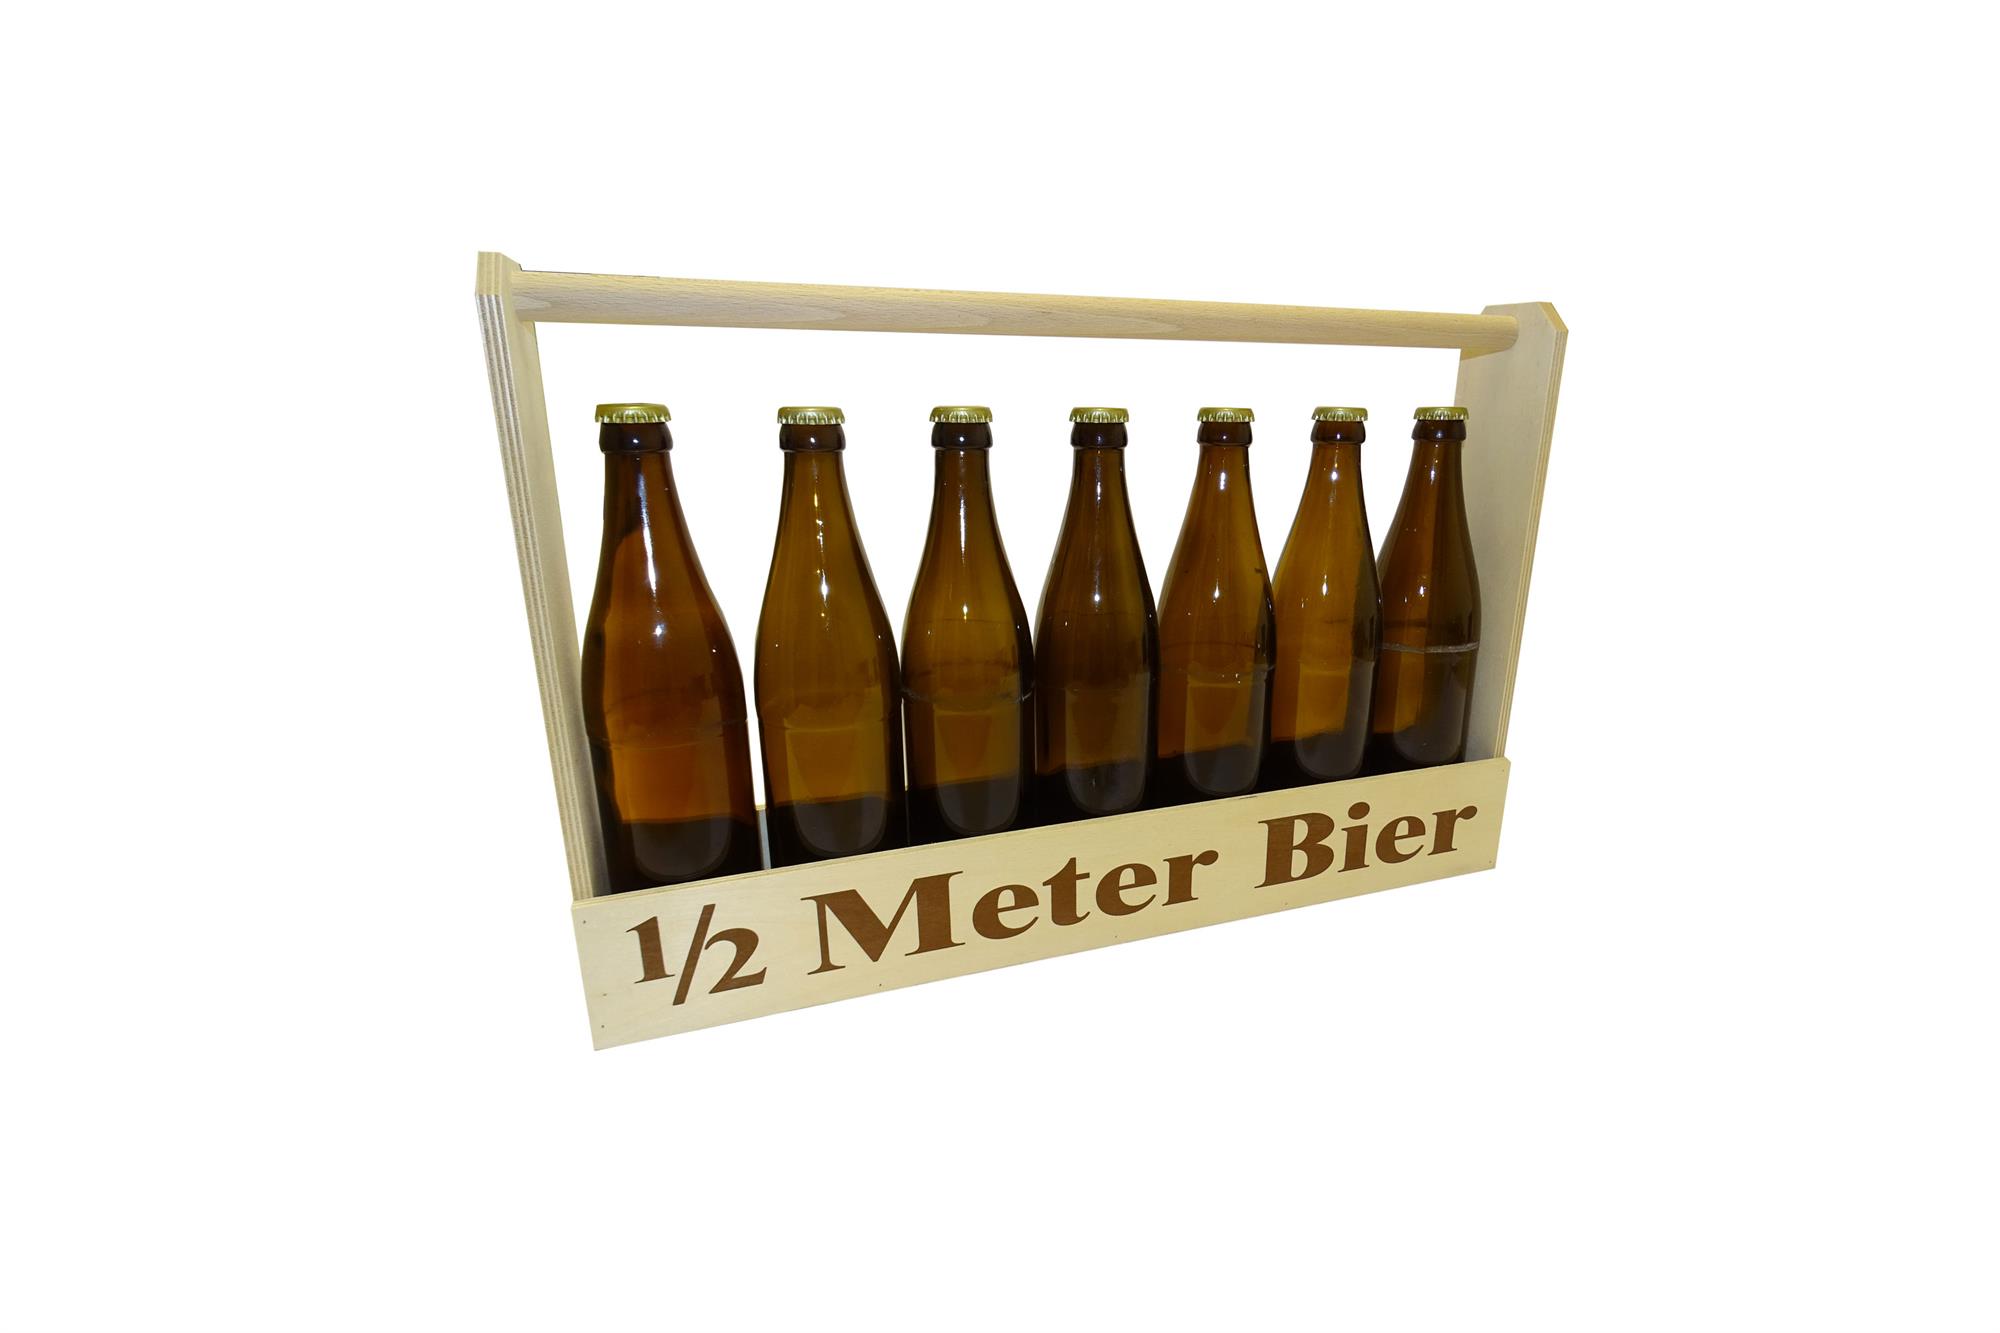 1/2 Meter Bier | 7 x 0,5 Liter | Bierflaschen